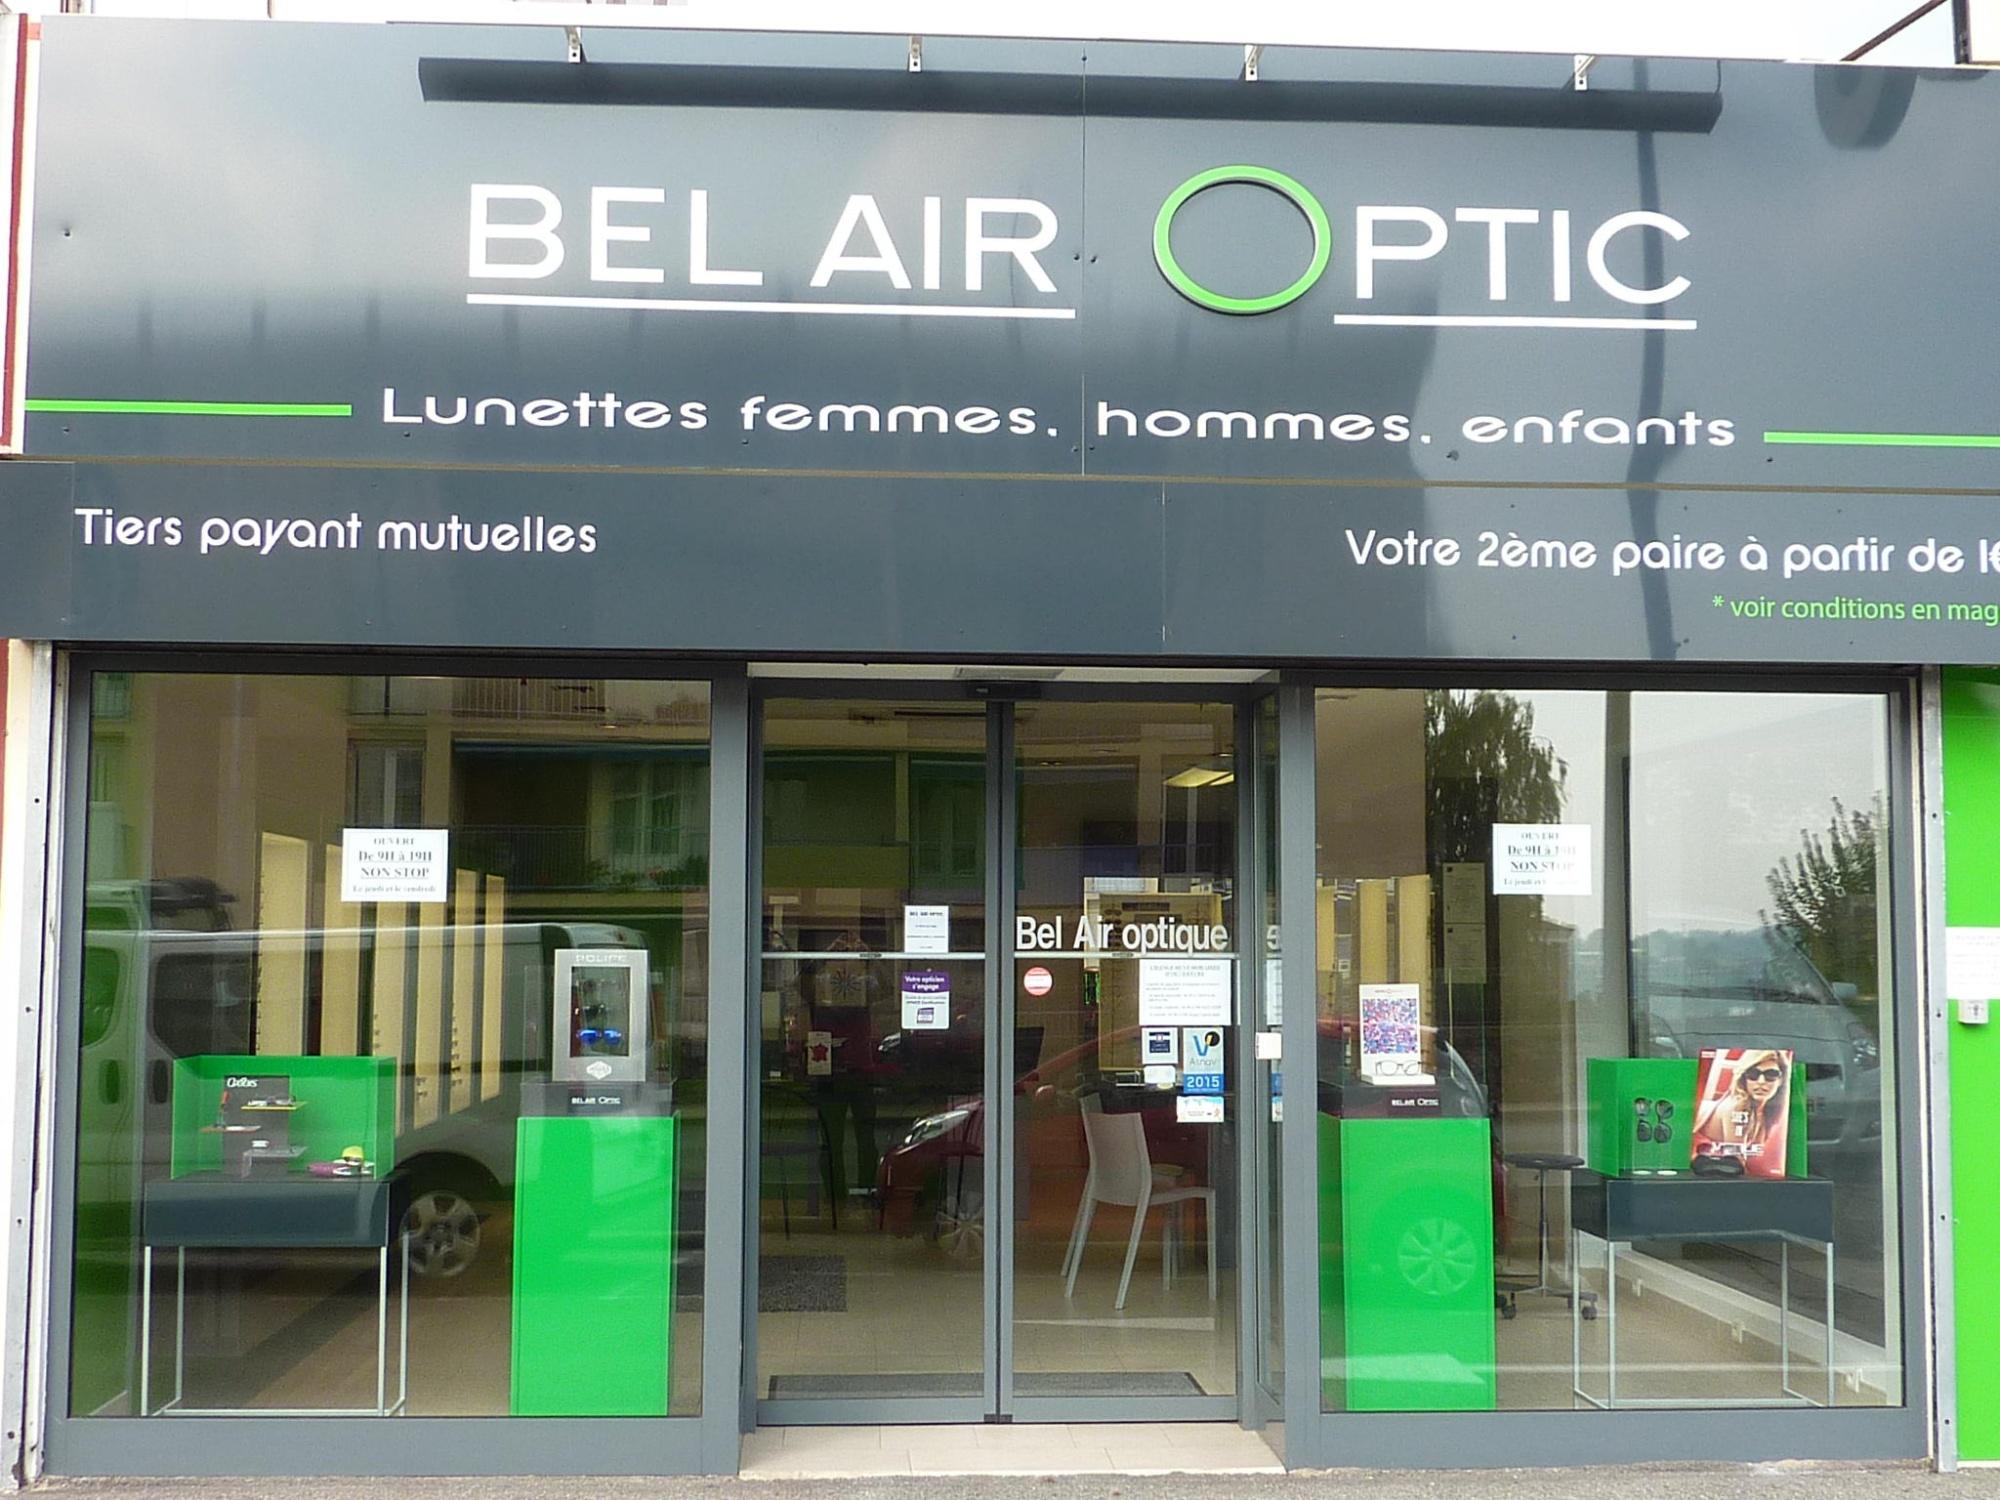 Bel Air Optic Annonay